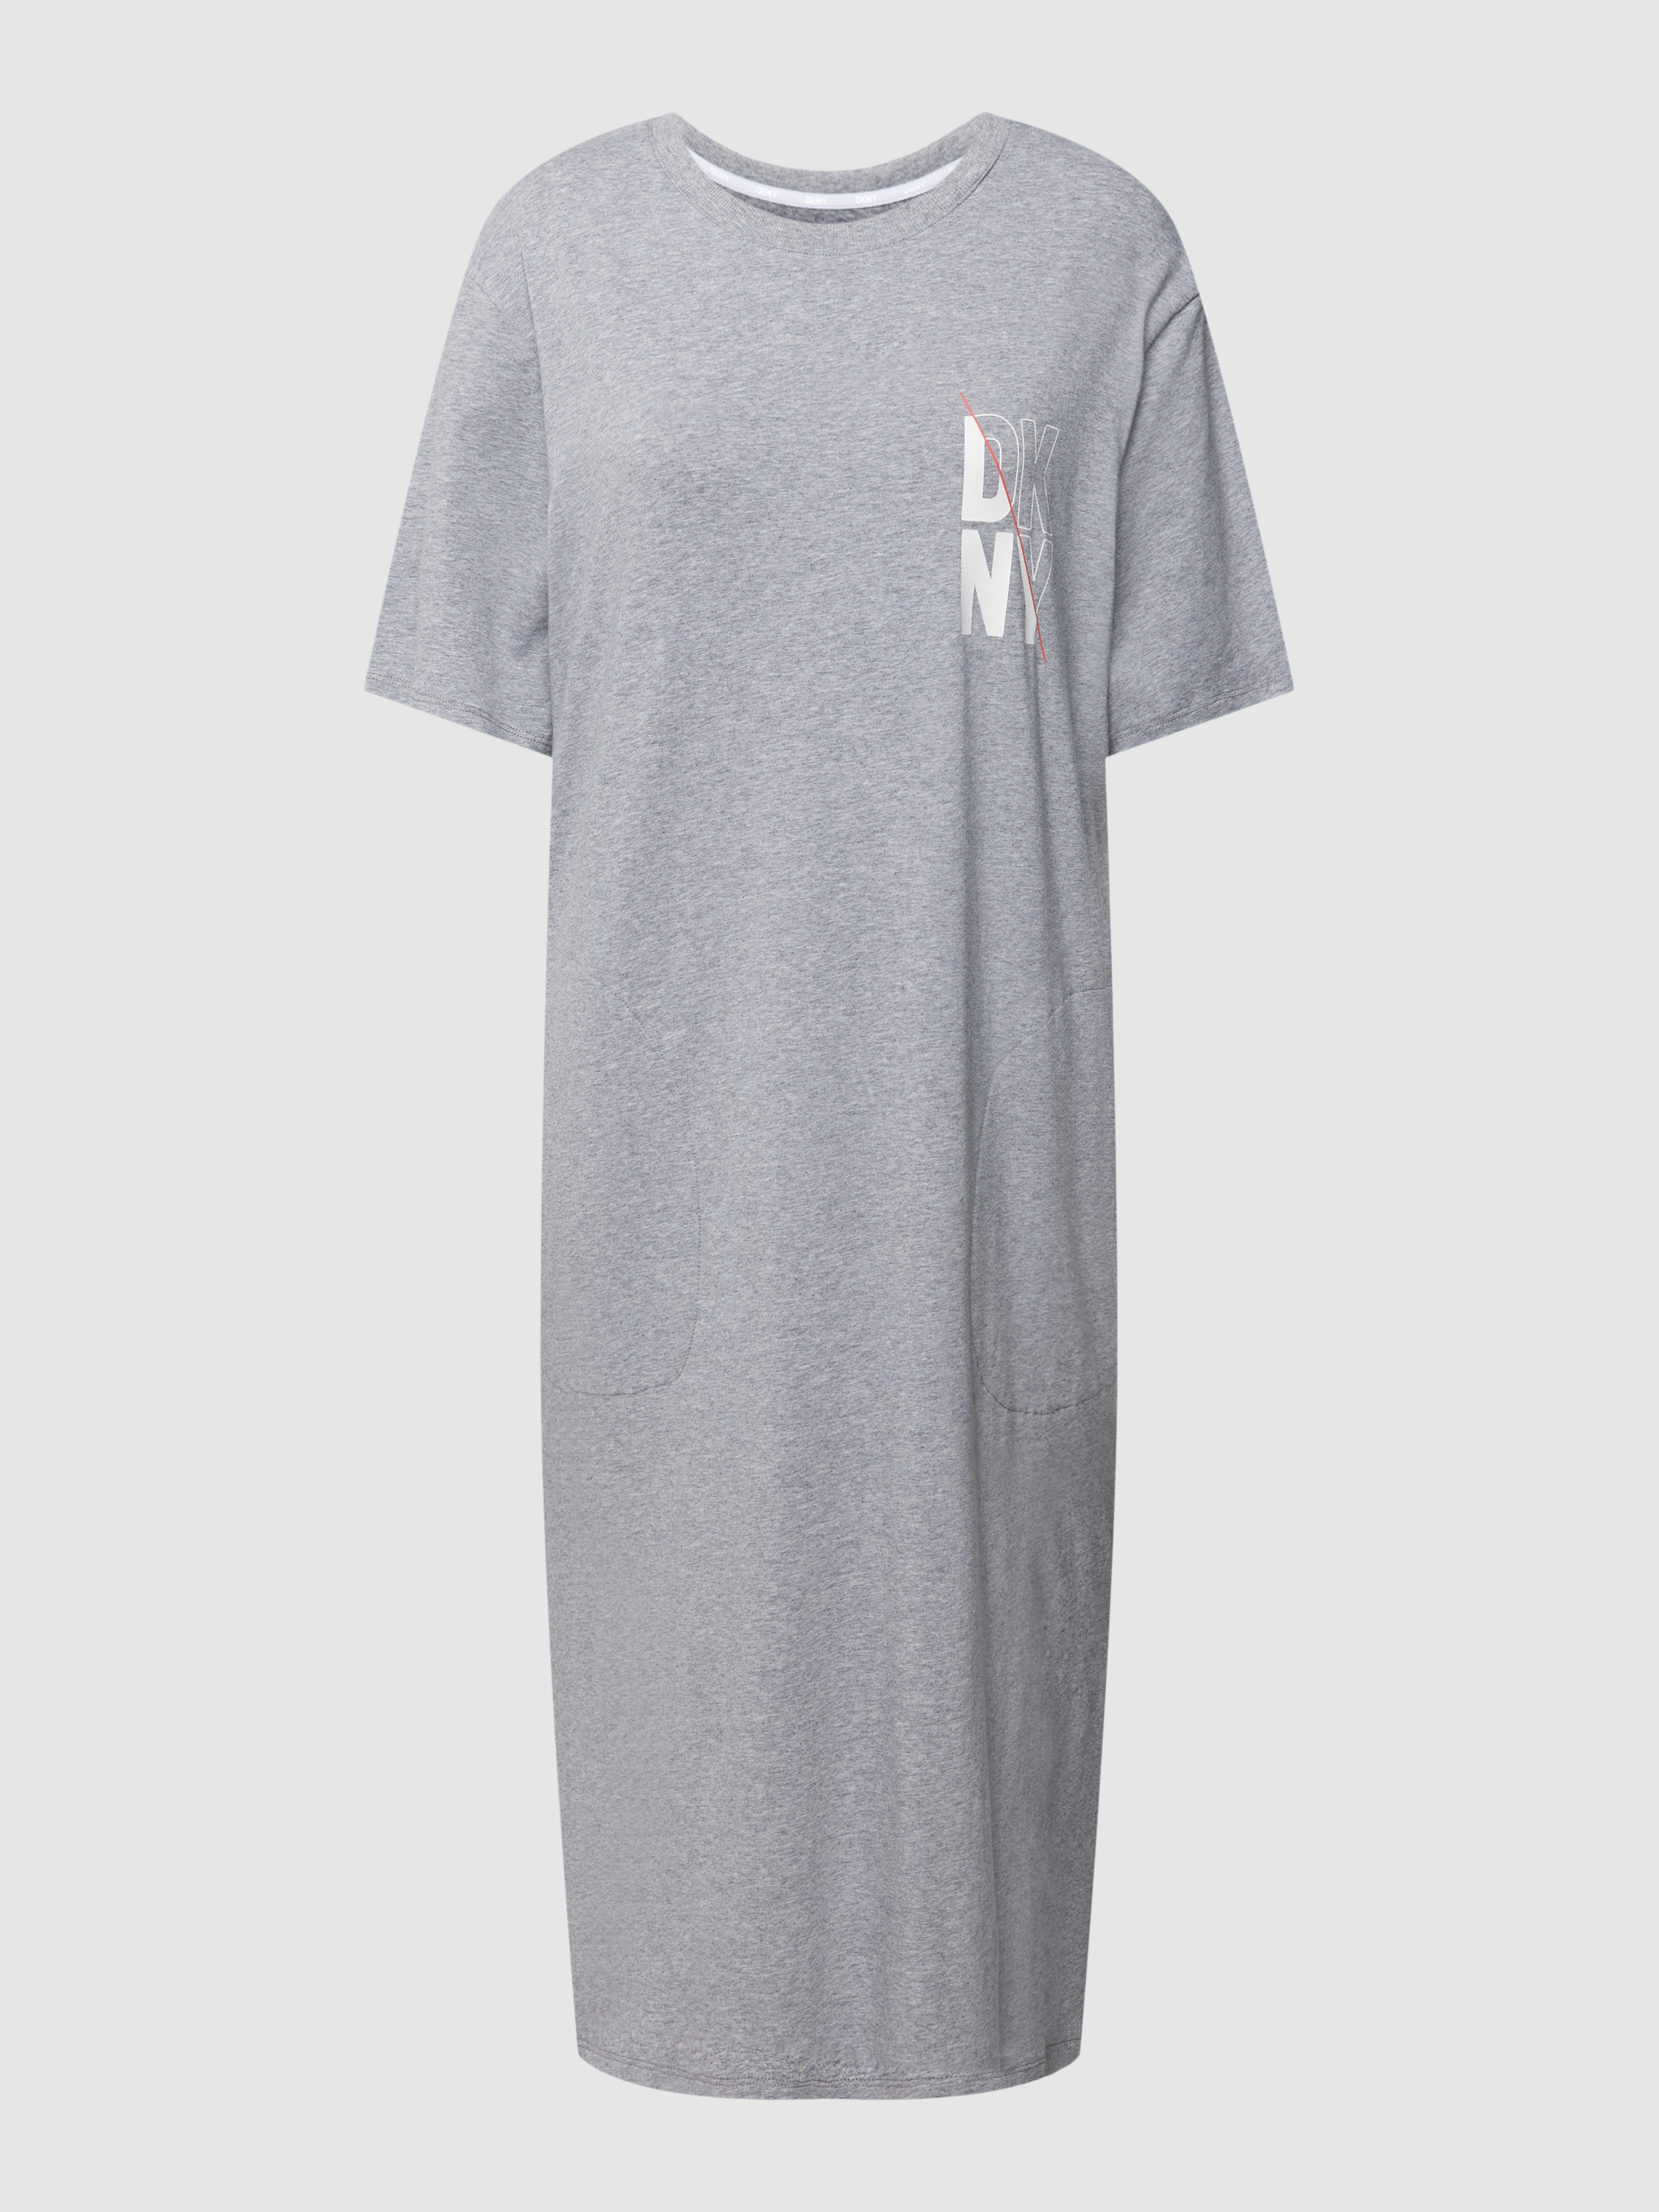 Платье домашнее женское DKNY 1785740 серое S (доставка из-за рубежа)